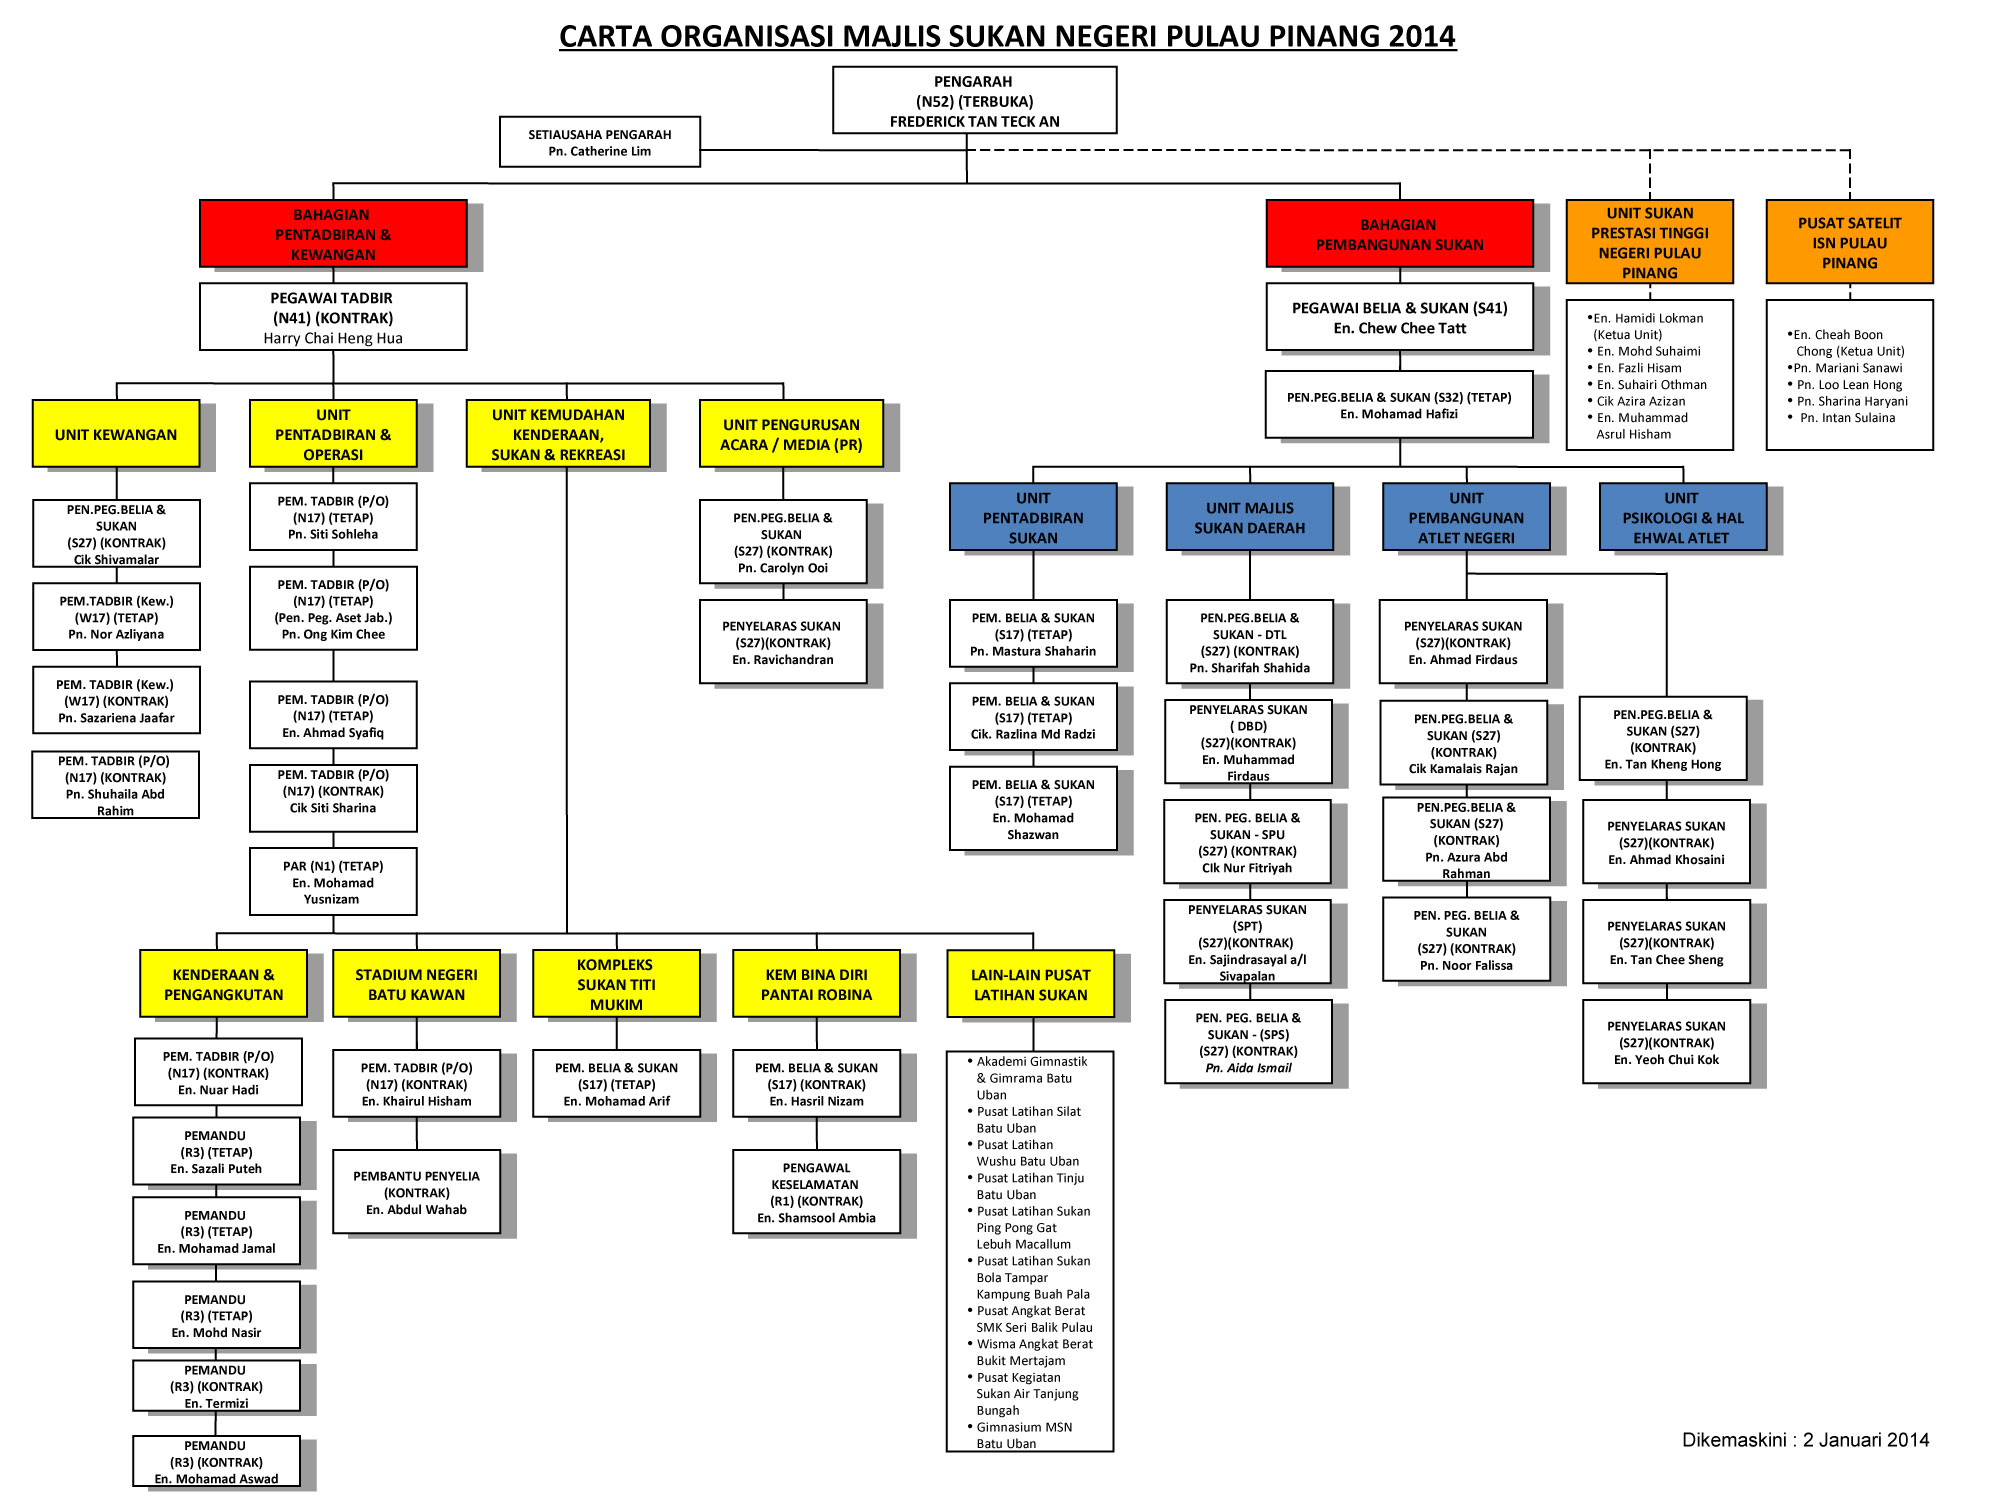 Carta-Organisasi-MSNPP-2014